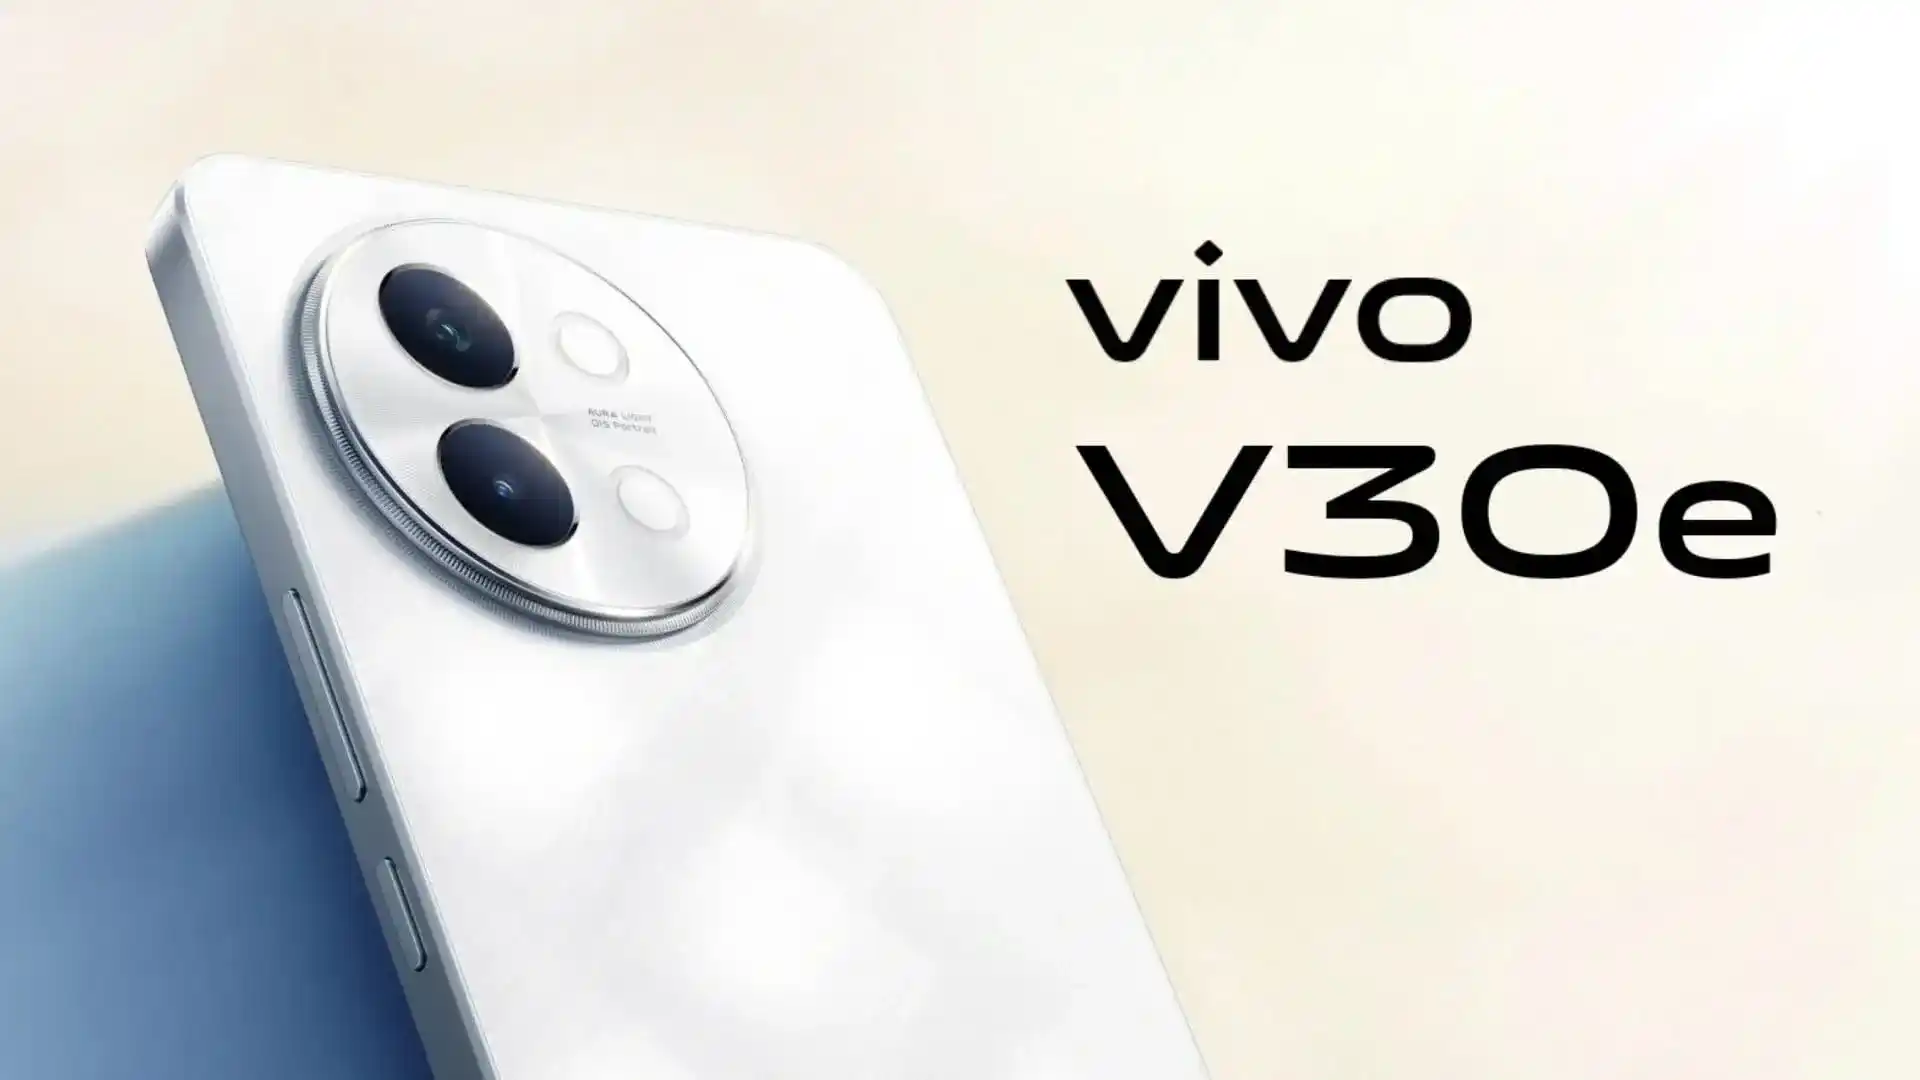 Informator ujawnił wygląd i specyfikację nowego smartfona Vivo V30e